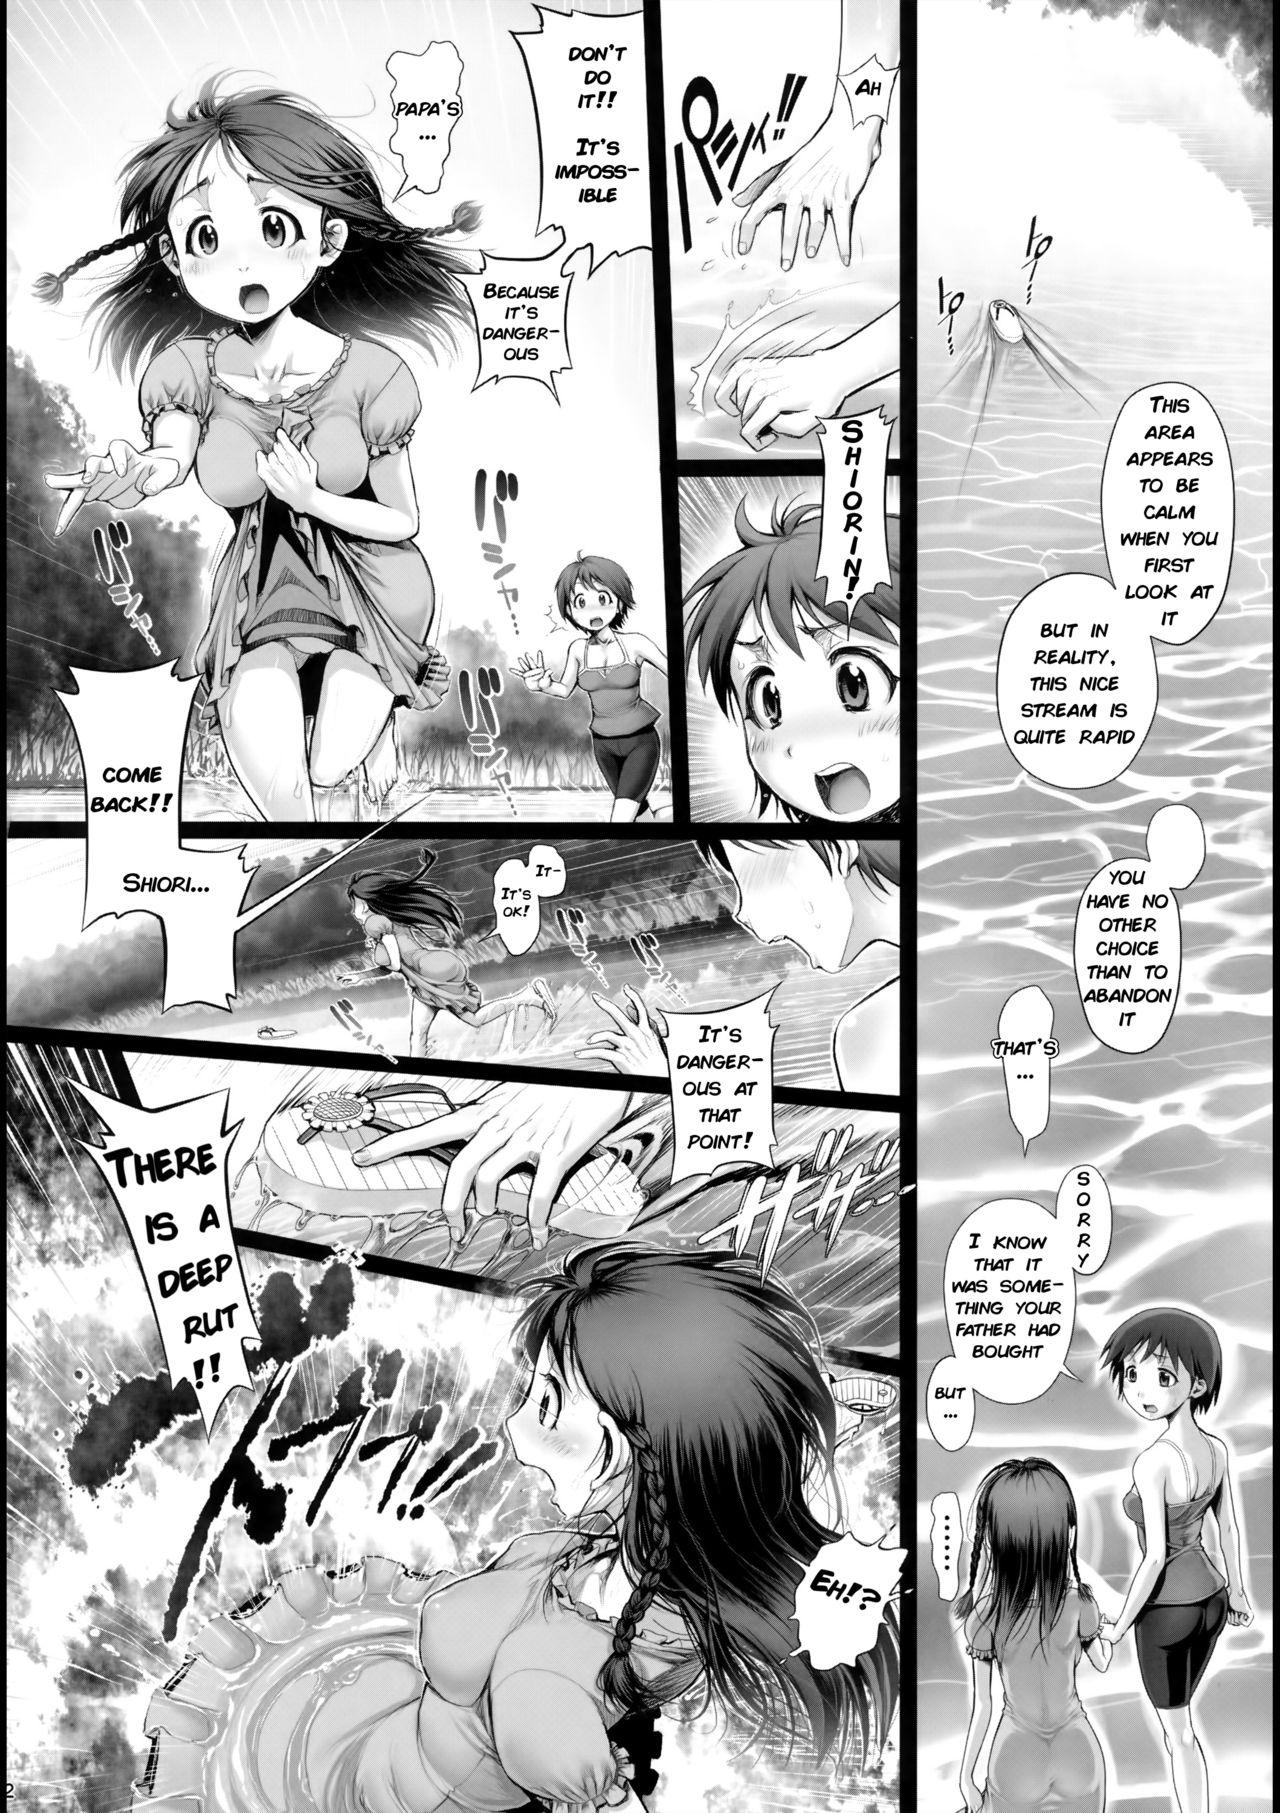 Spreadeagle Angel Crisis 3 - Shizukana Kohan no Mori no Kage kara - Original Amazing - Page 3